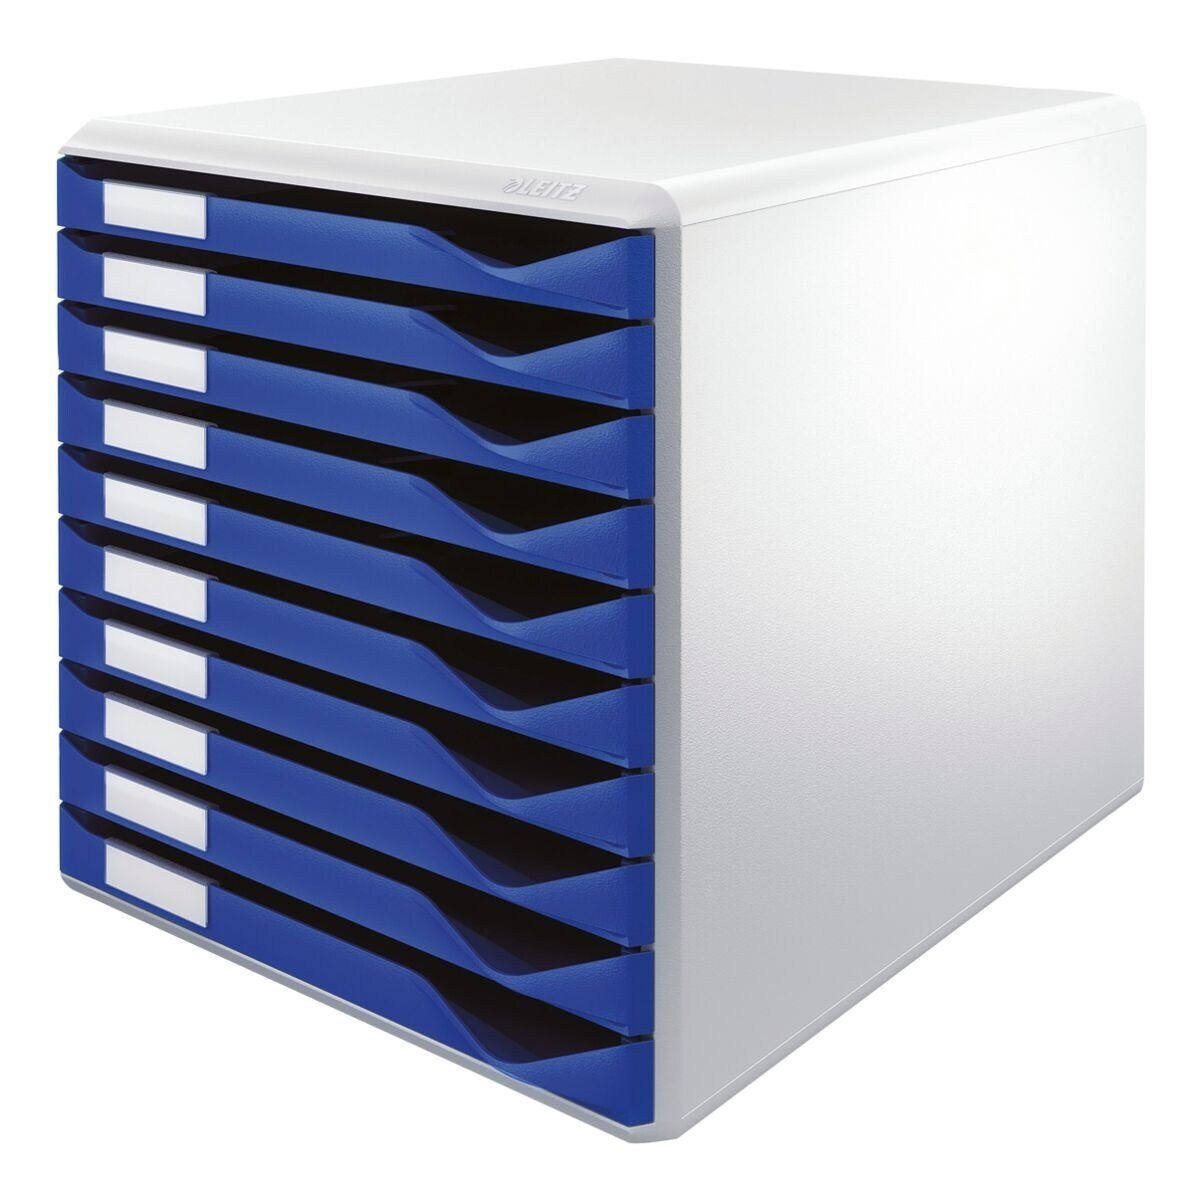 LEITZ Schubladenbox Formular-Set 5281, mit 10 Schubladen, geschlossen blau